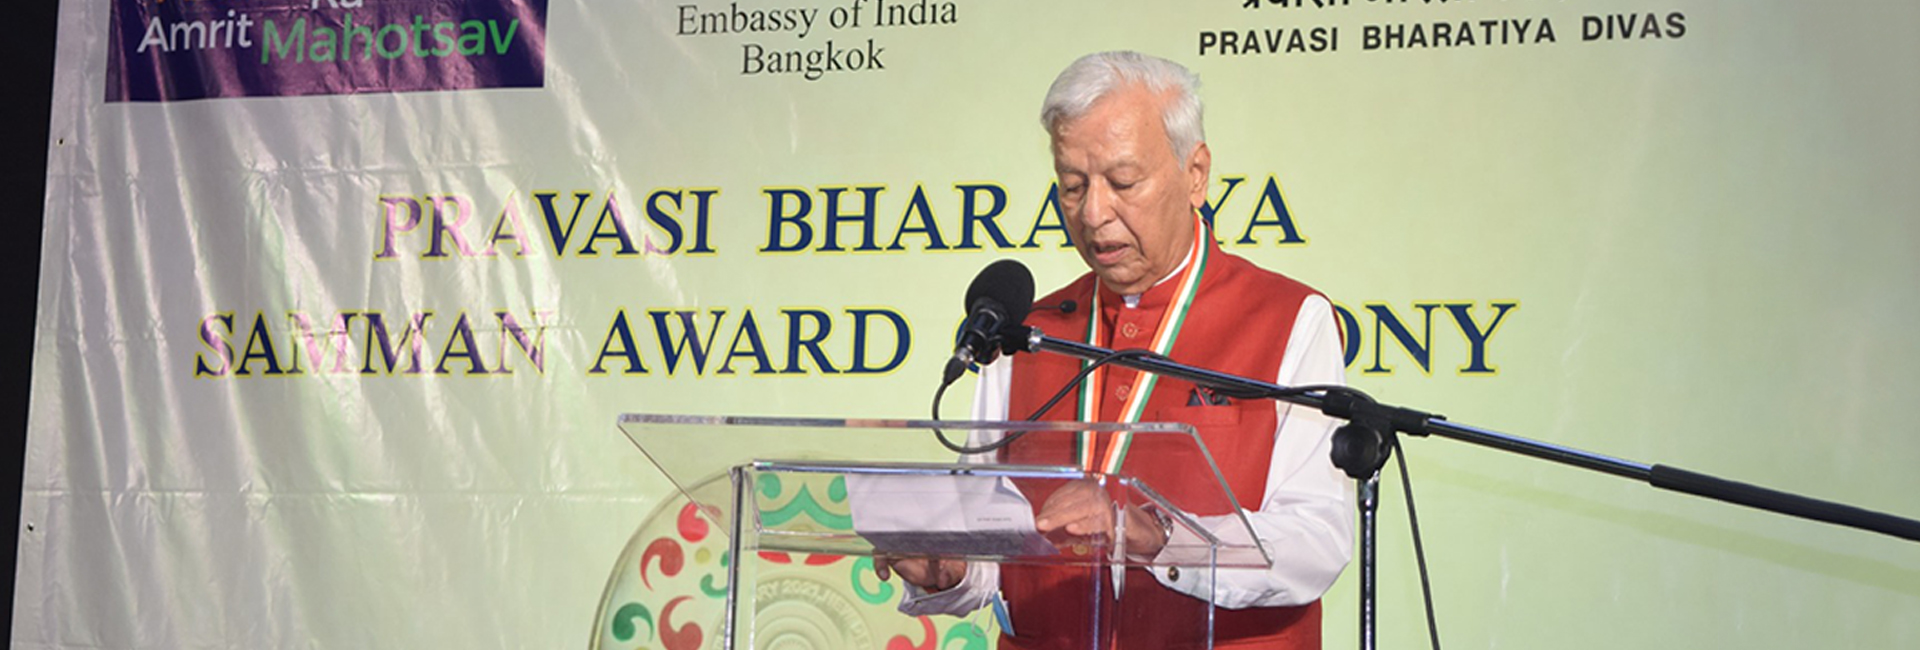 थाई-भारतीय डायस्पोरा में वाशी पुरस्वानी का योगदान प्रवासी भारतीय सम्मान अर्जित करता है